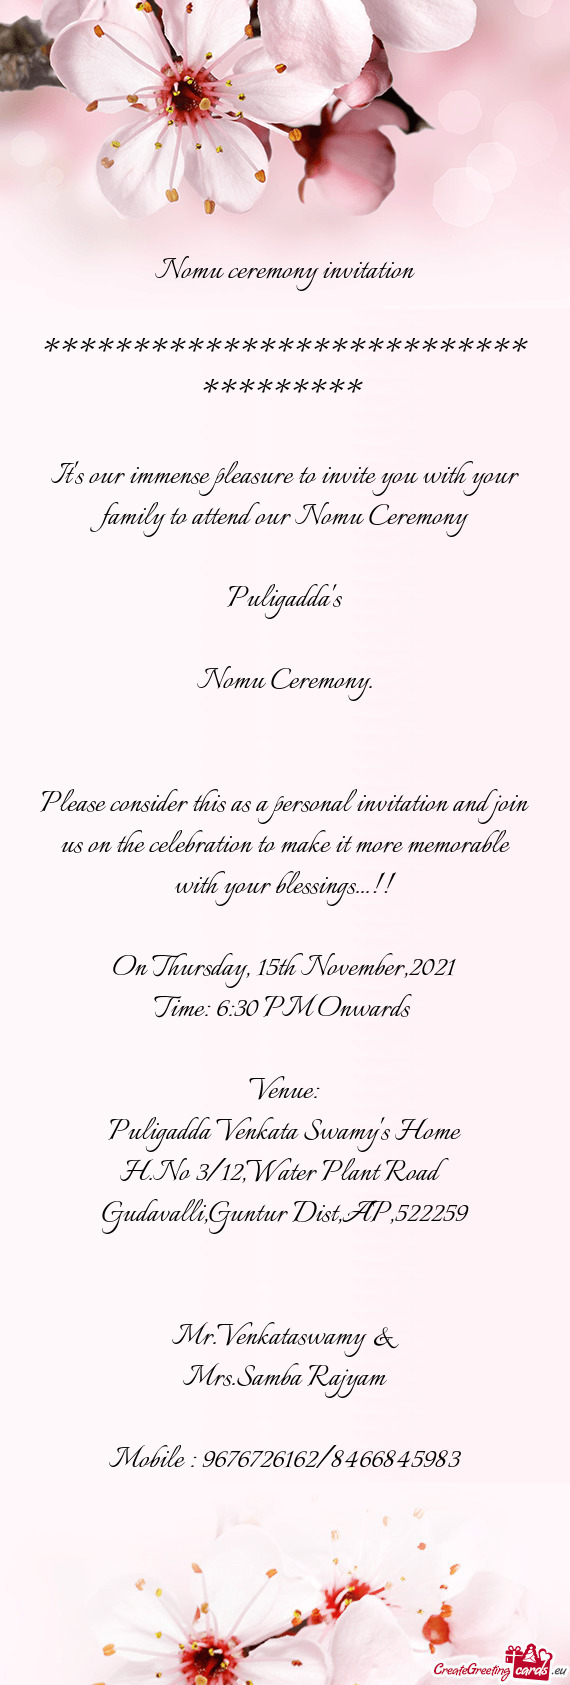 Nomu ceremony invitation